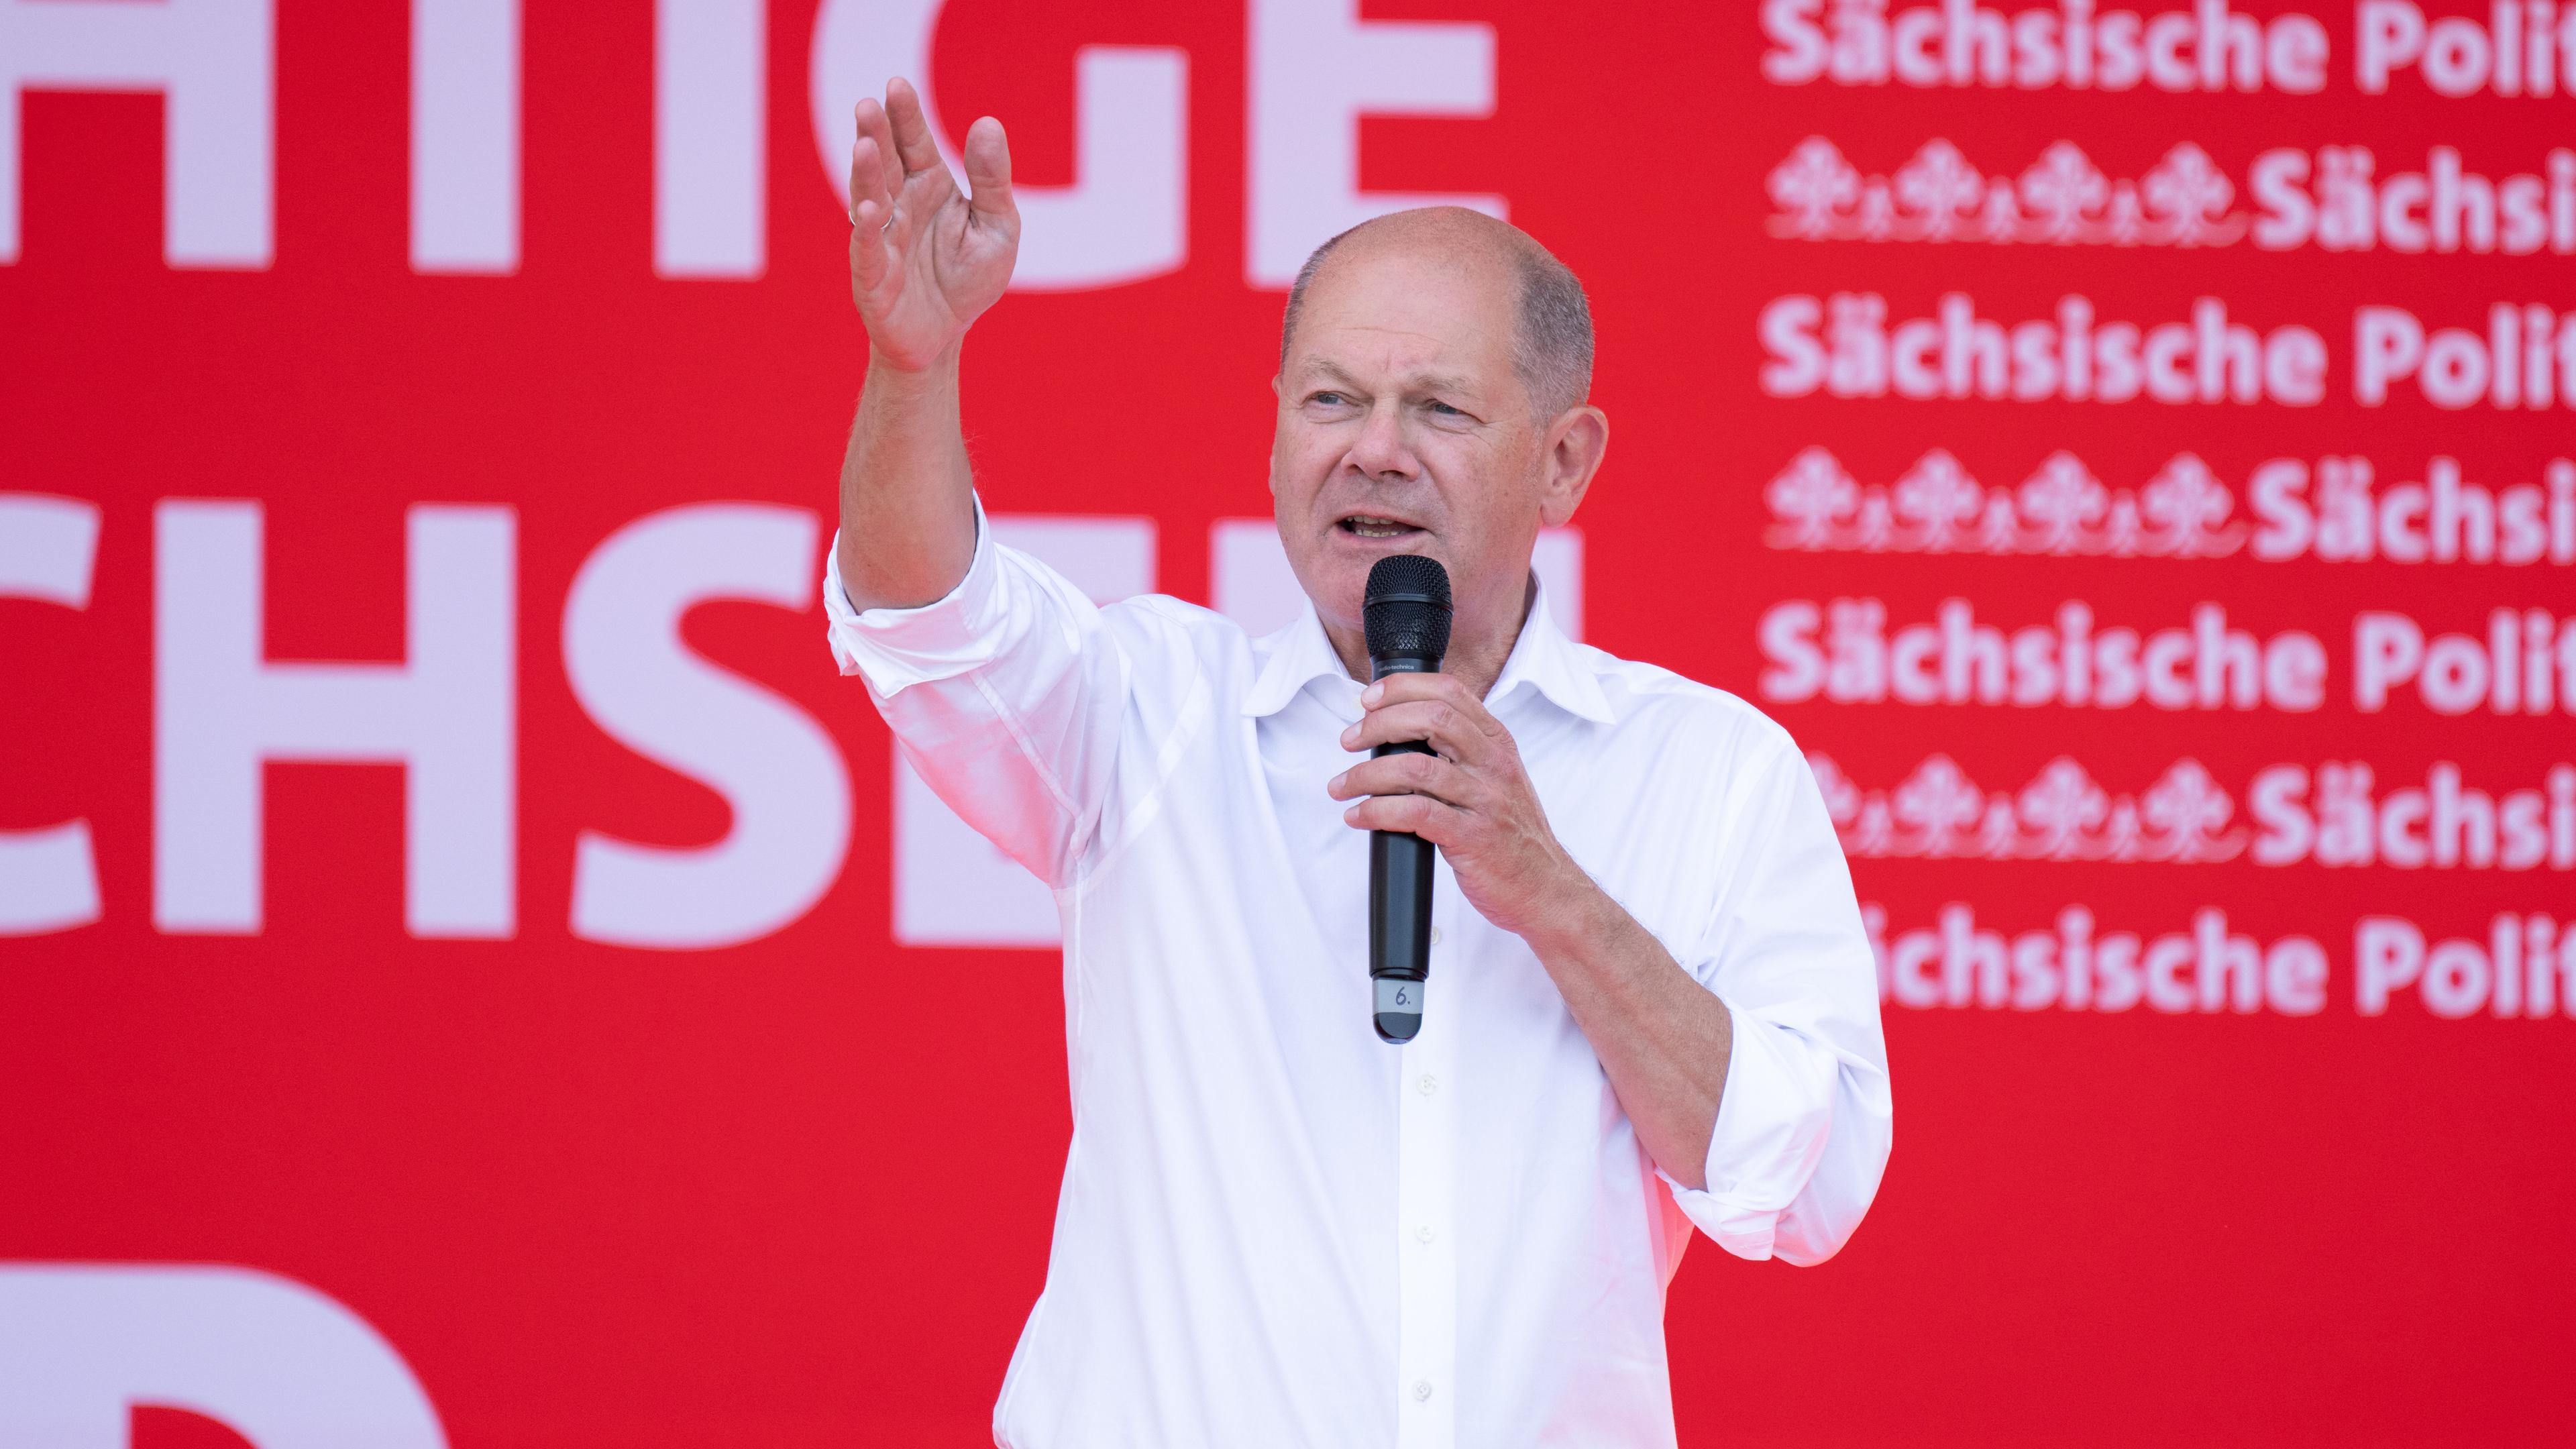 Bundeskanzler Olaf Scholz bei einer Wahlkampfveranstaltung in Dresden